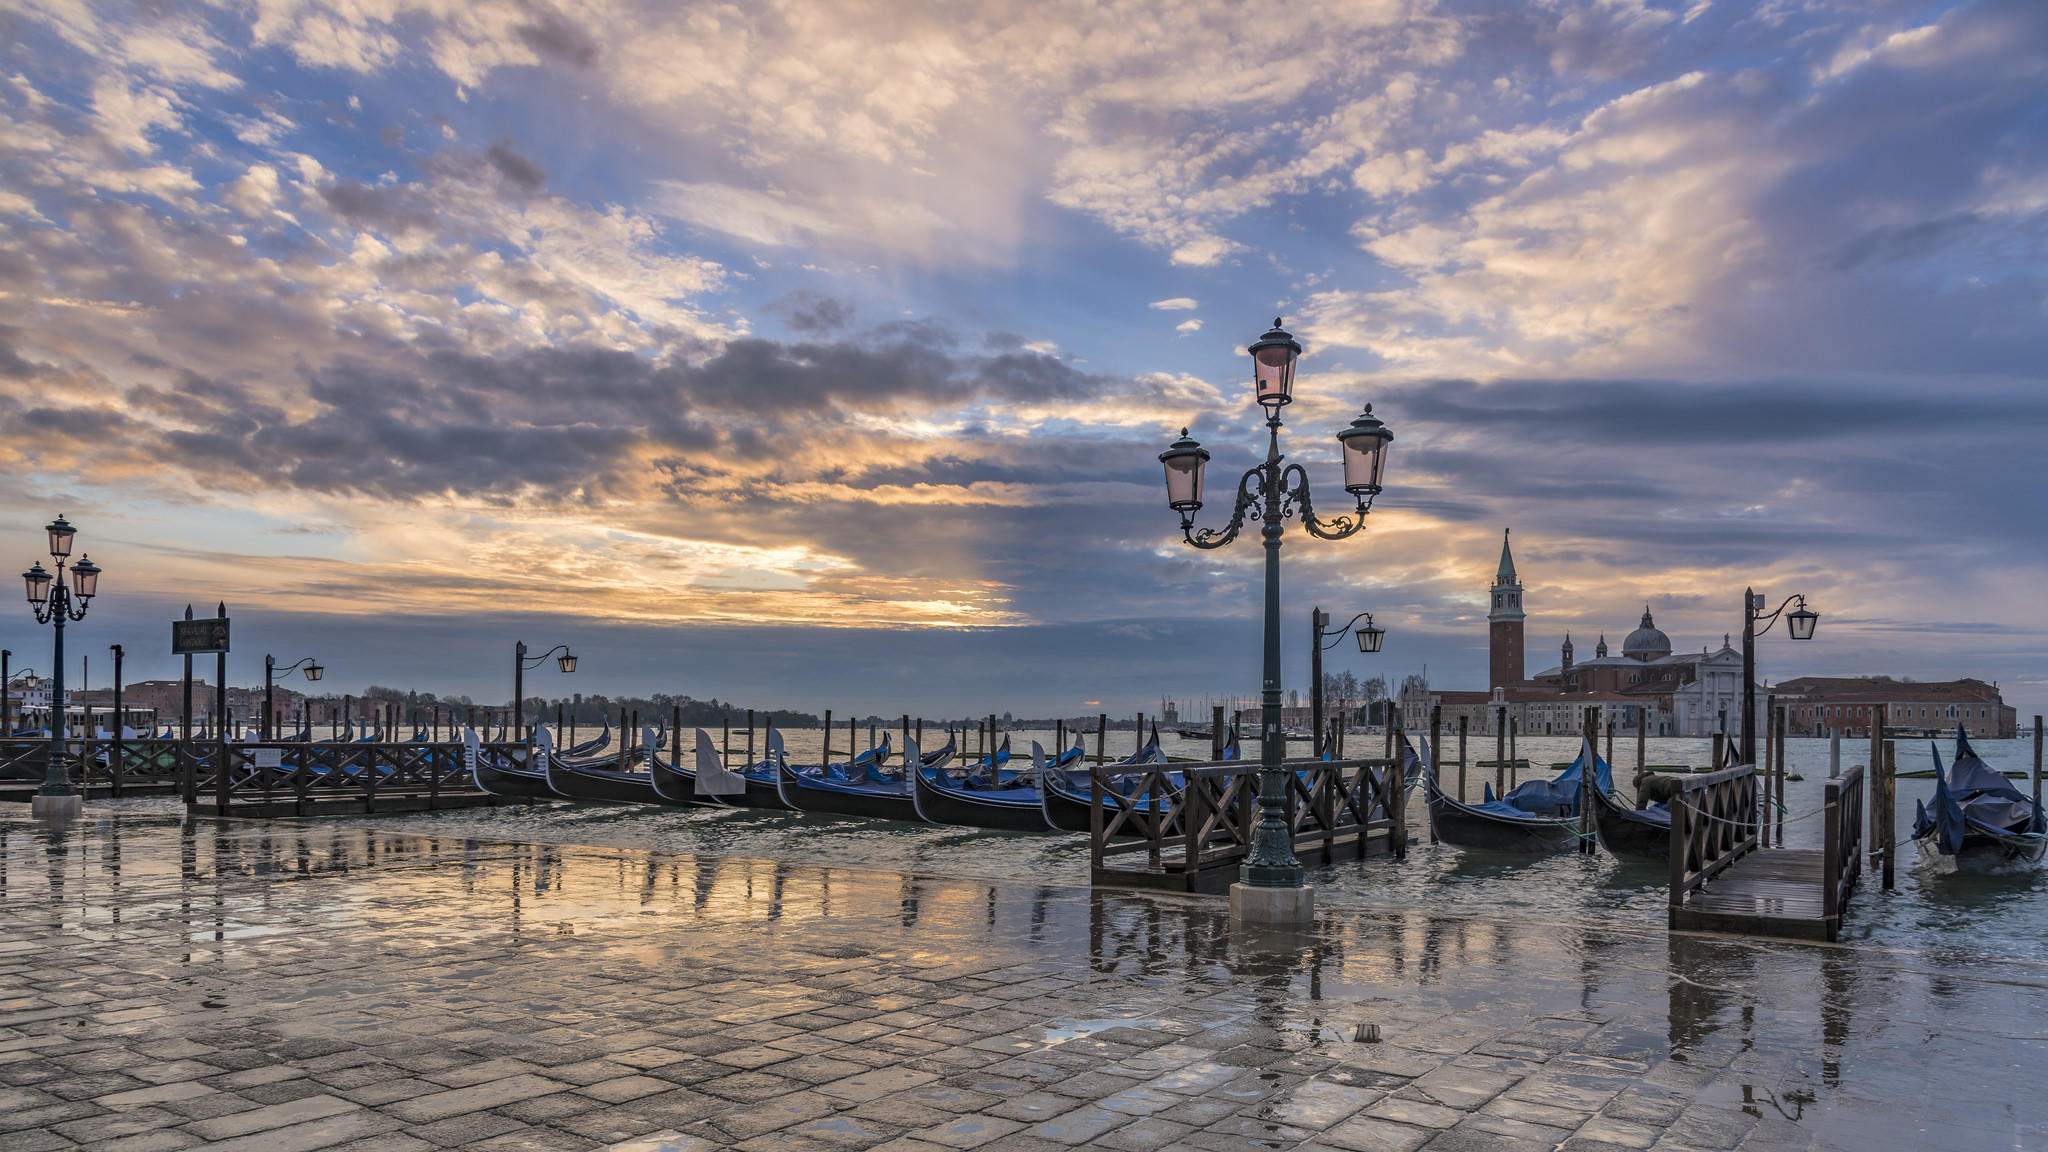 Обои Венеция канал Италия на рабочий стол